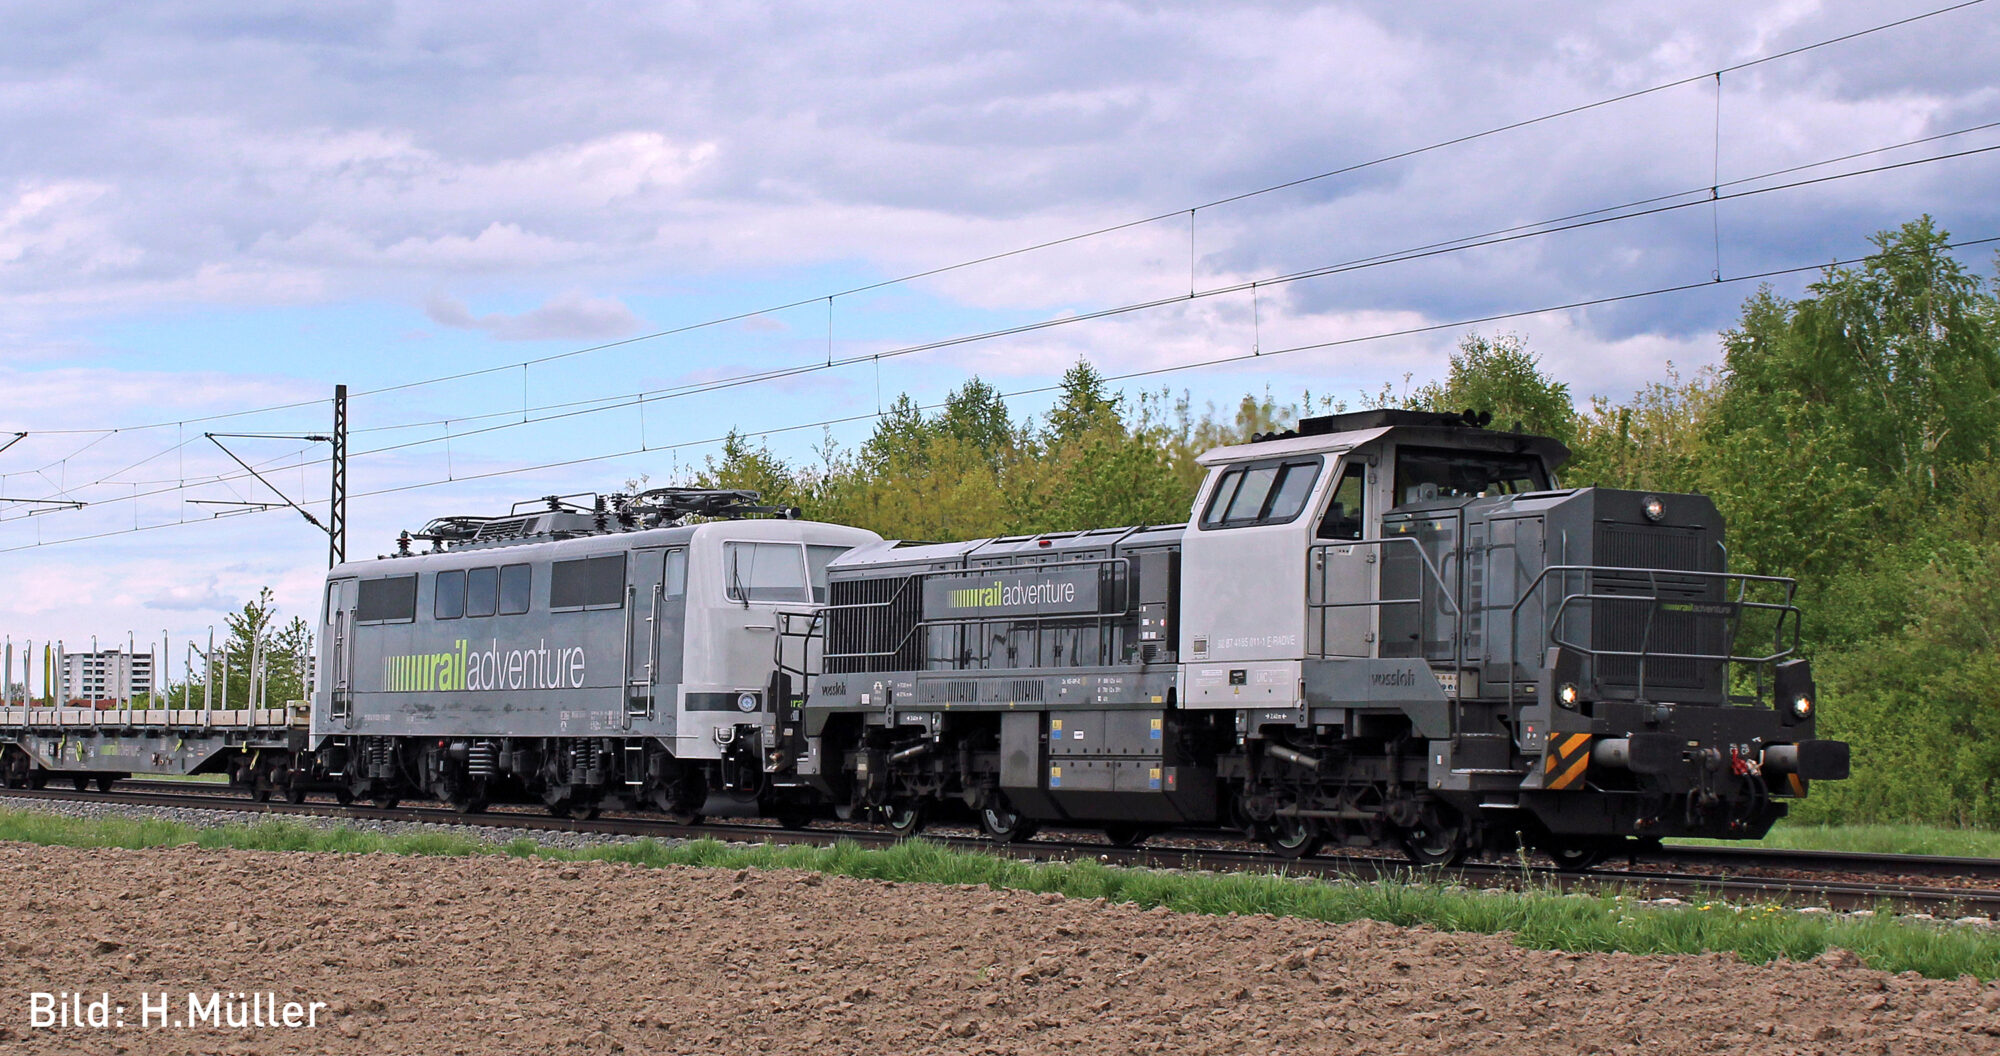 Hobbytrain H32103S Diesellok Vossloh DE 18 Railadventure Ep. VI Sound